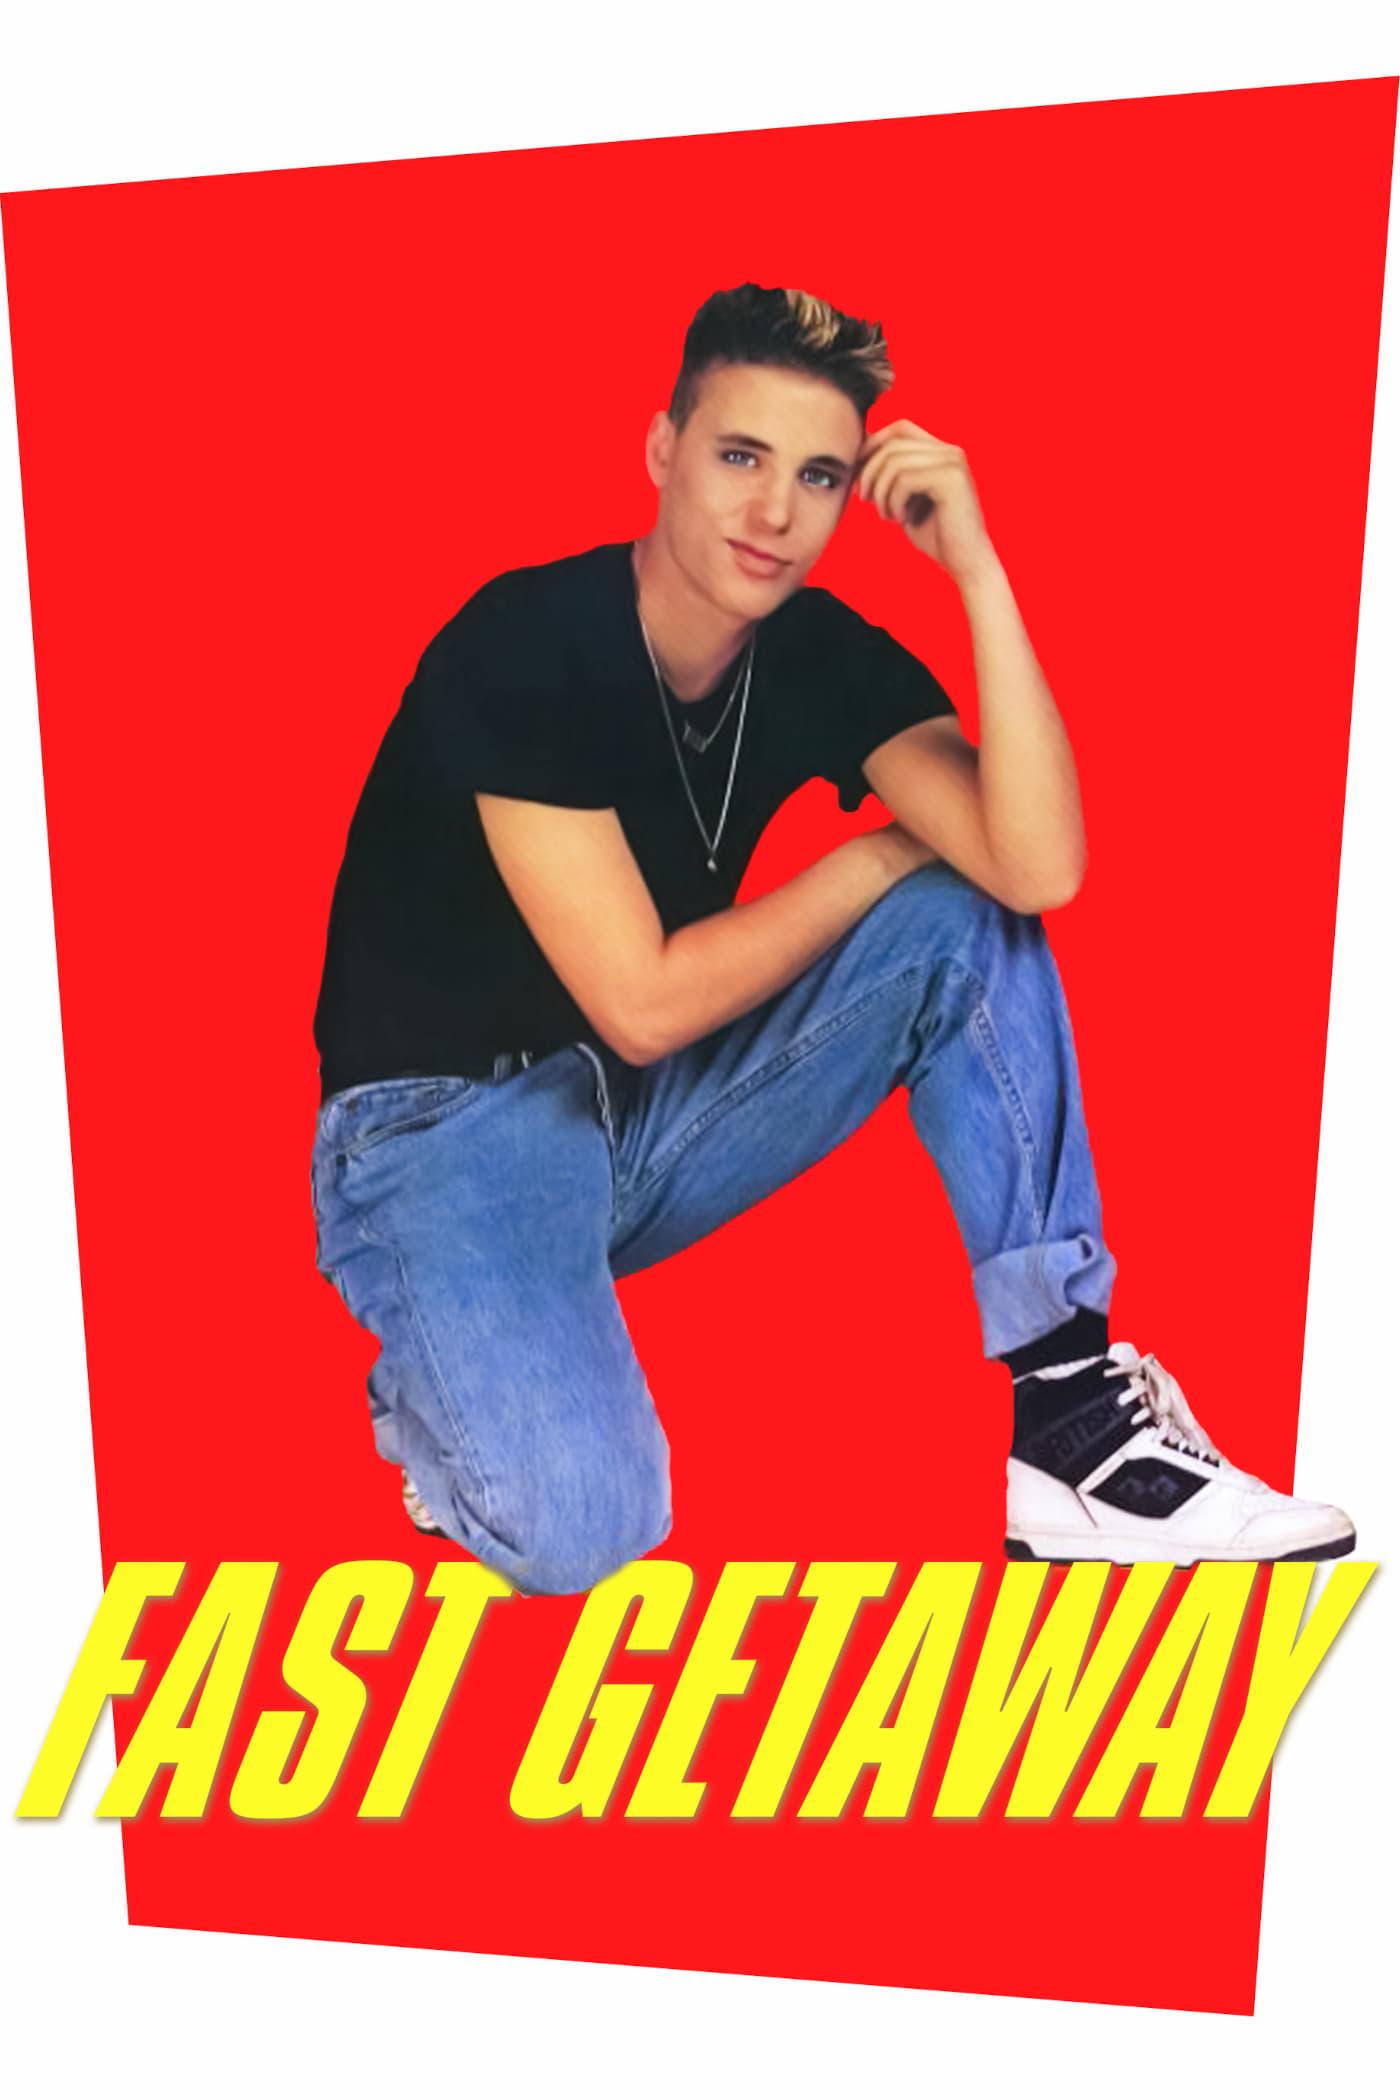 Fast Getaway poster